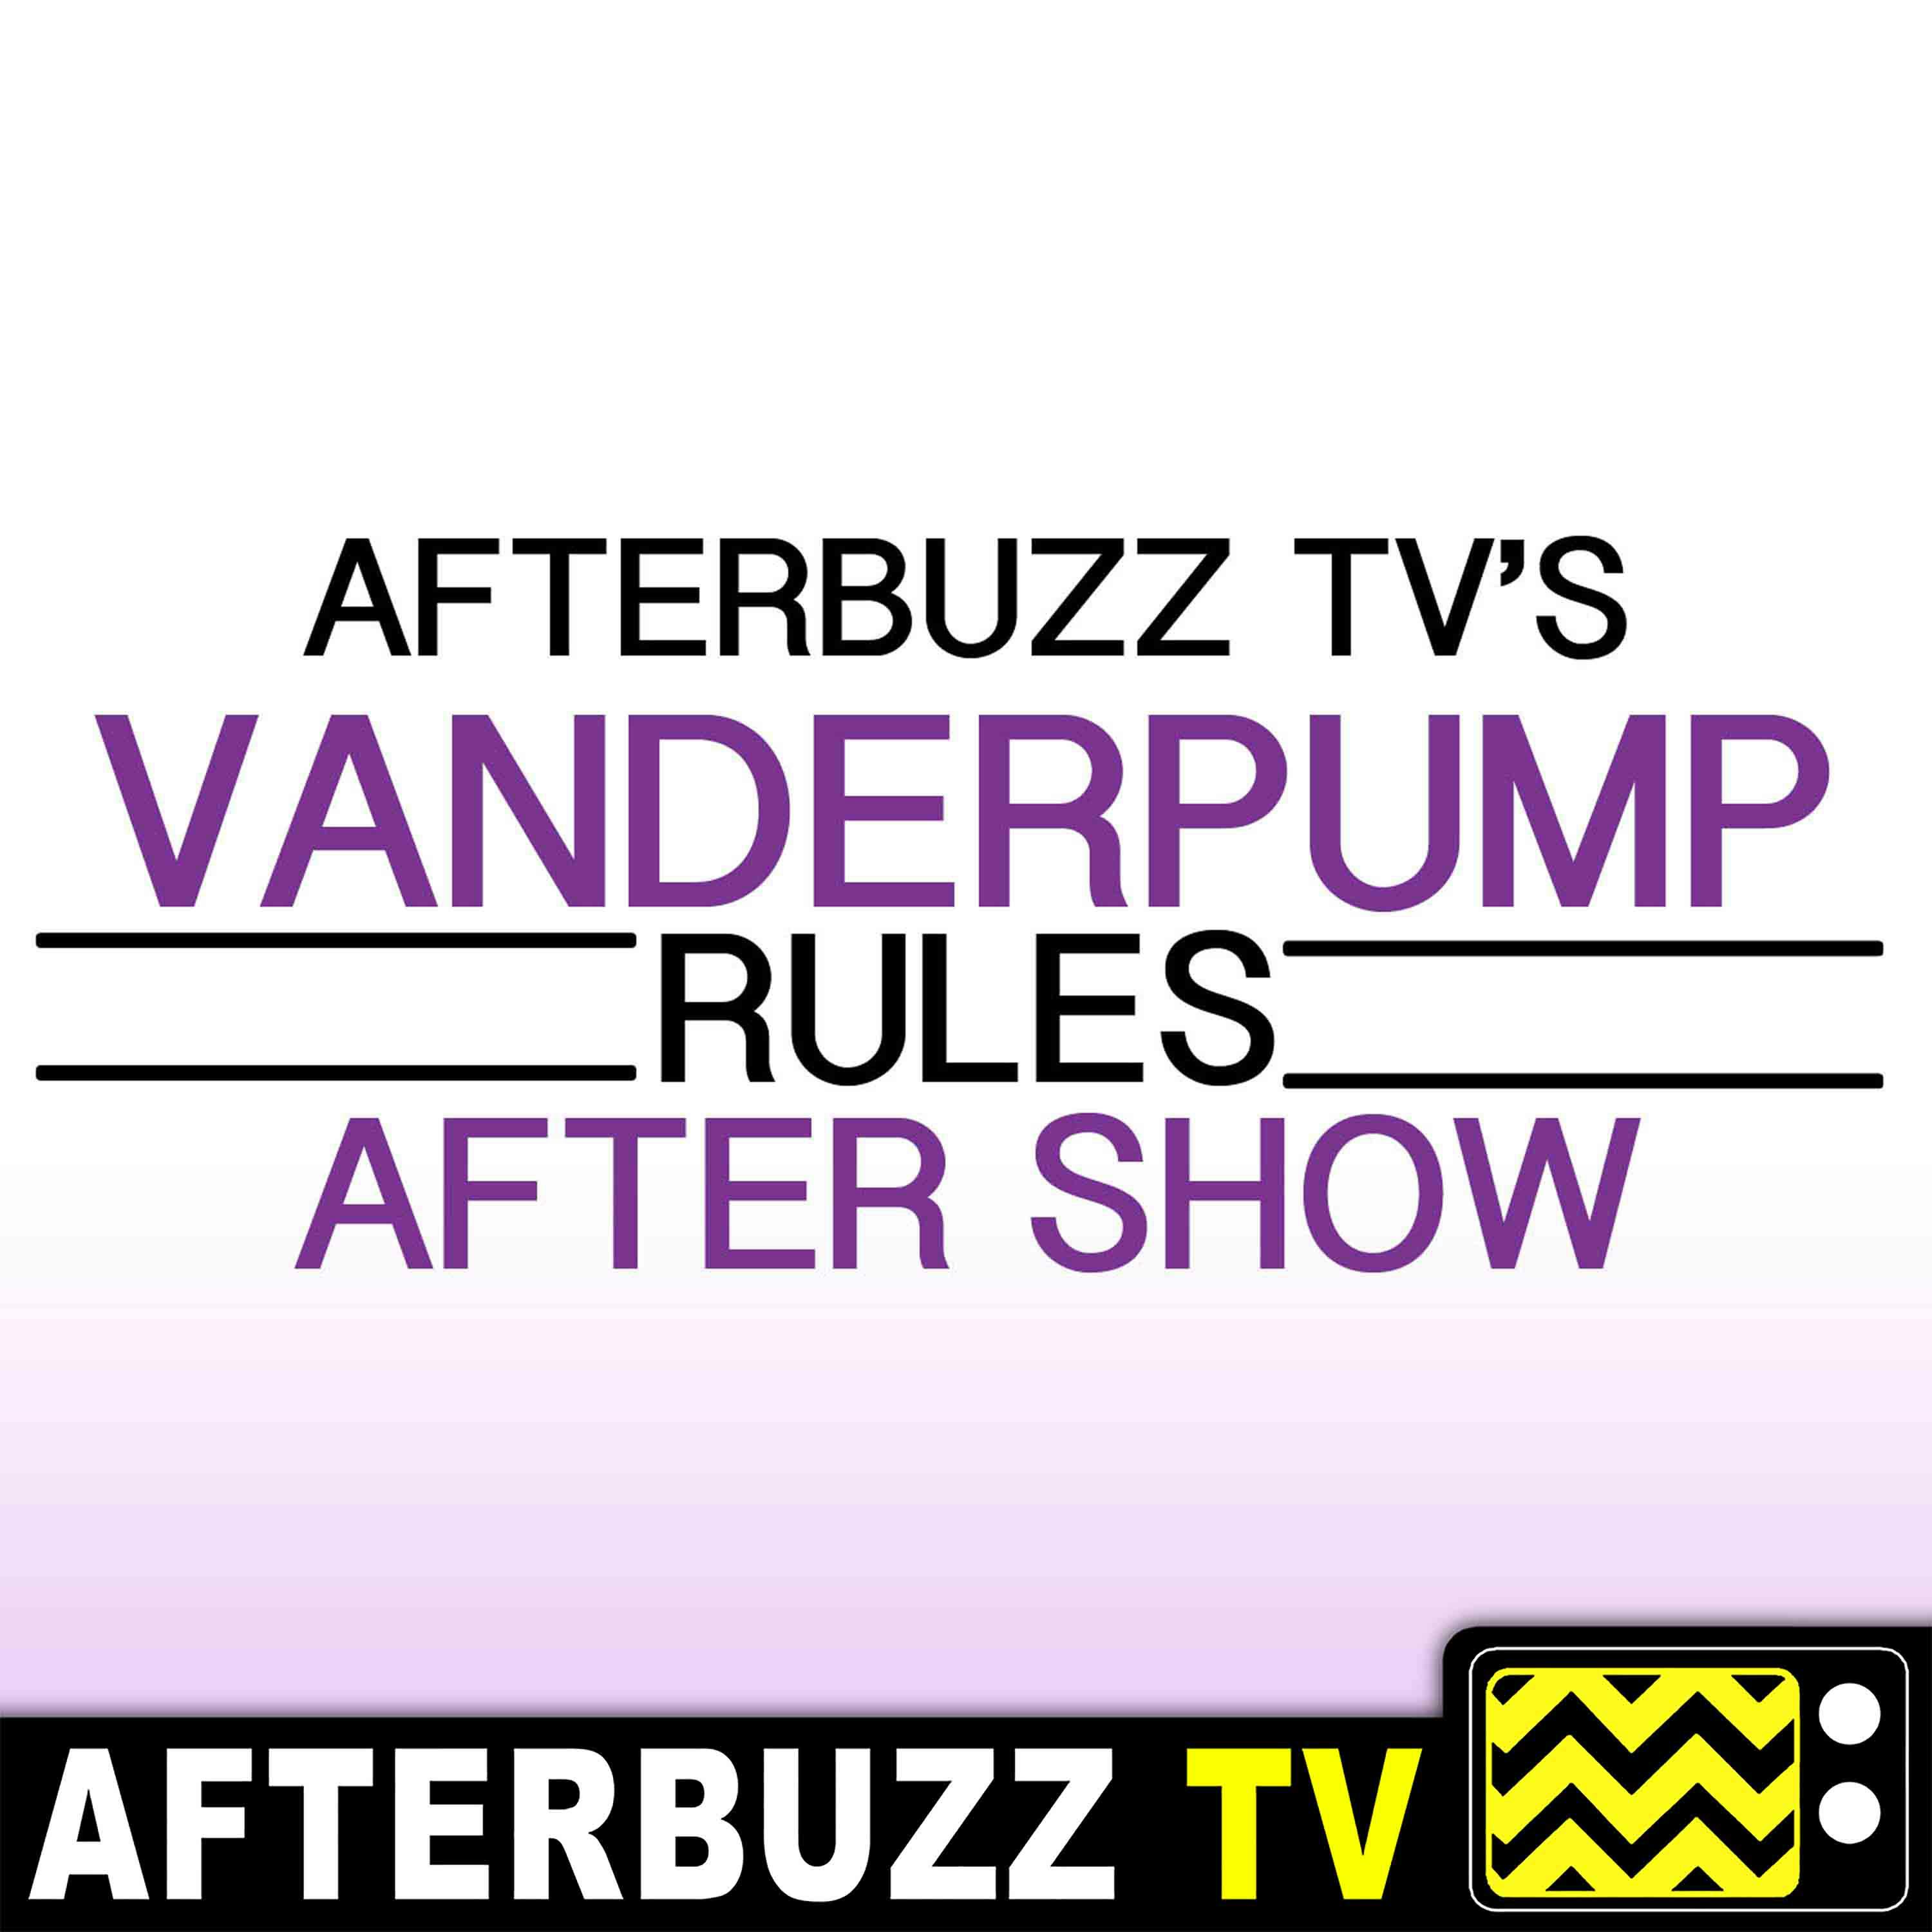 Vanderpump Rules S8 E18 Recap & After Show: The Wrath of Jax